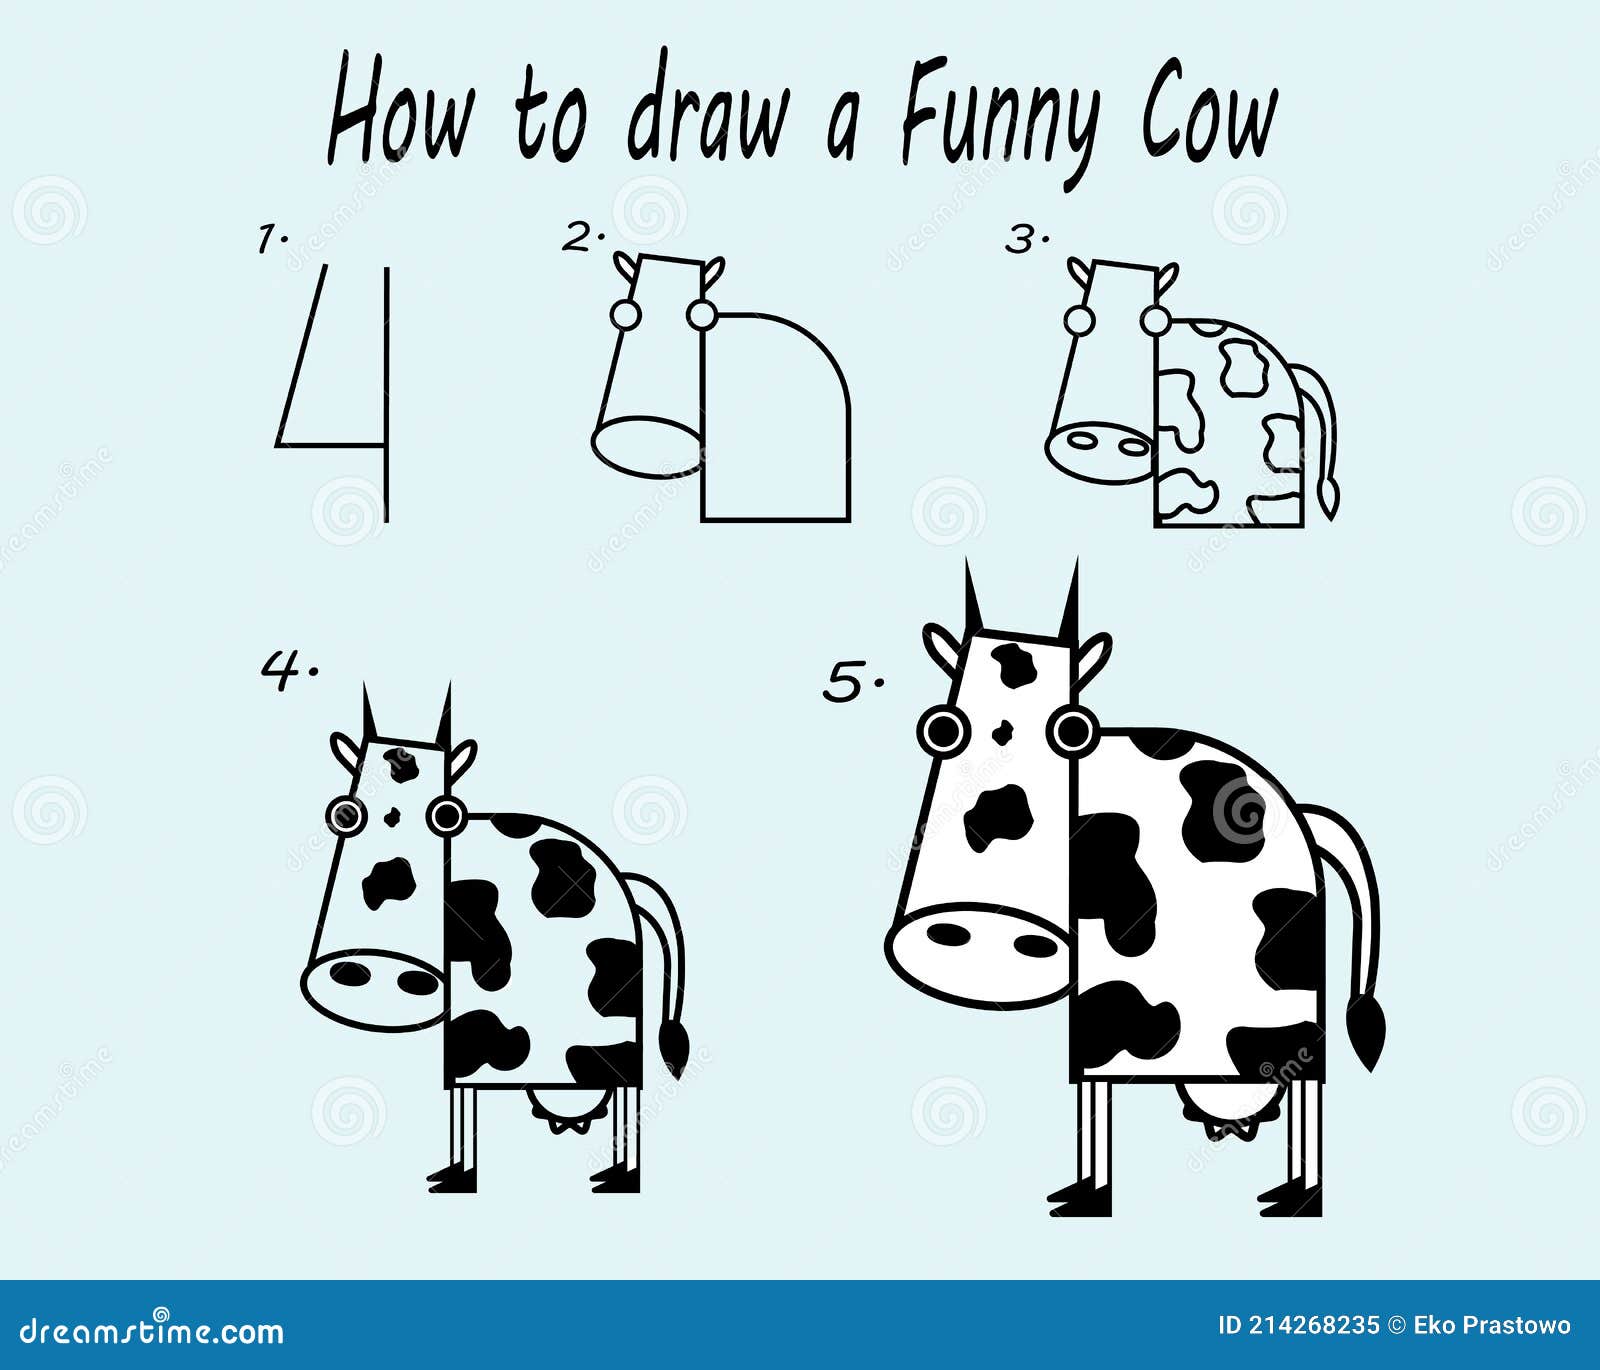 How to Draw a Cow - How to Draw Easy-saigonsouth.com.vn